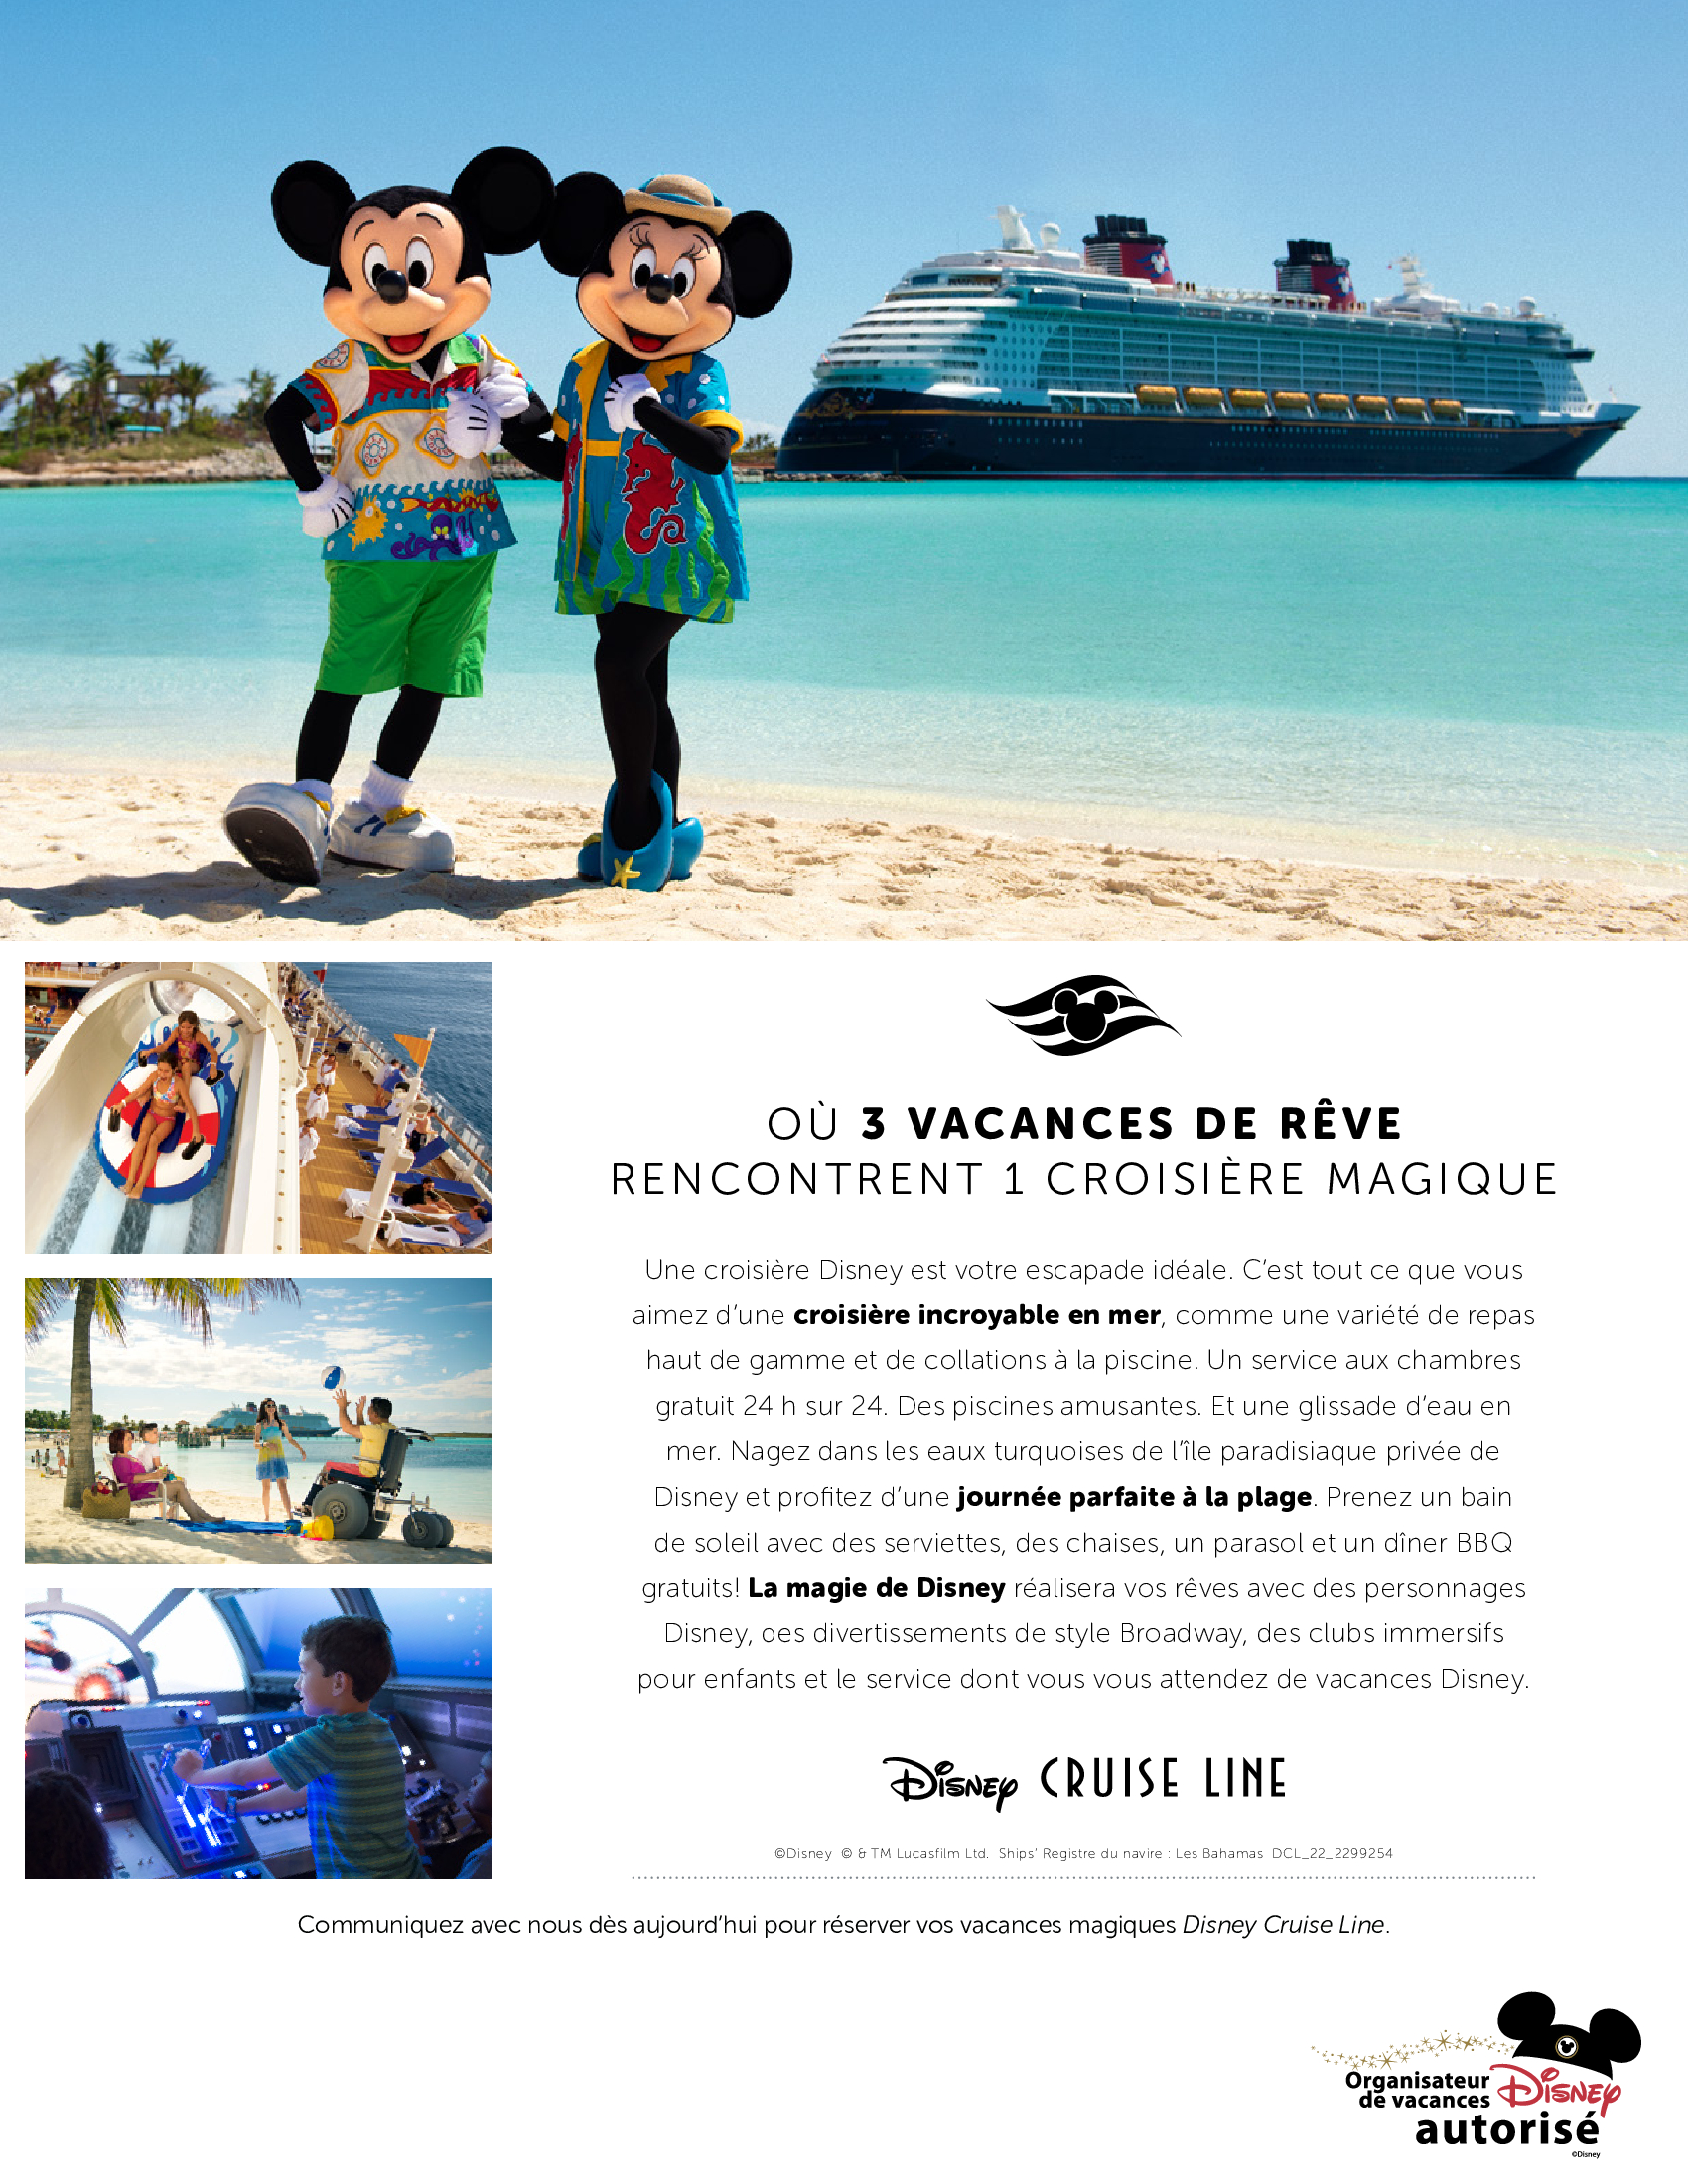 Disney Cruise Line - Où vacances de rêve rencontrent une croisière magique